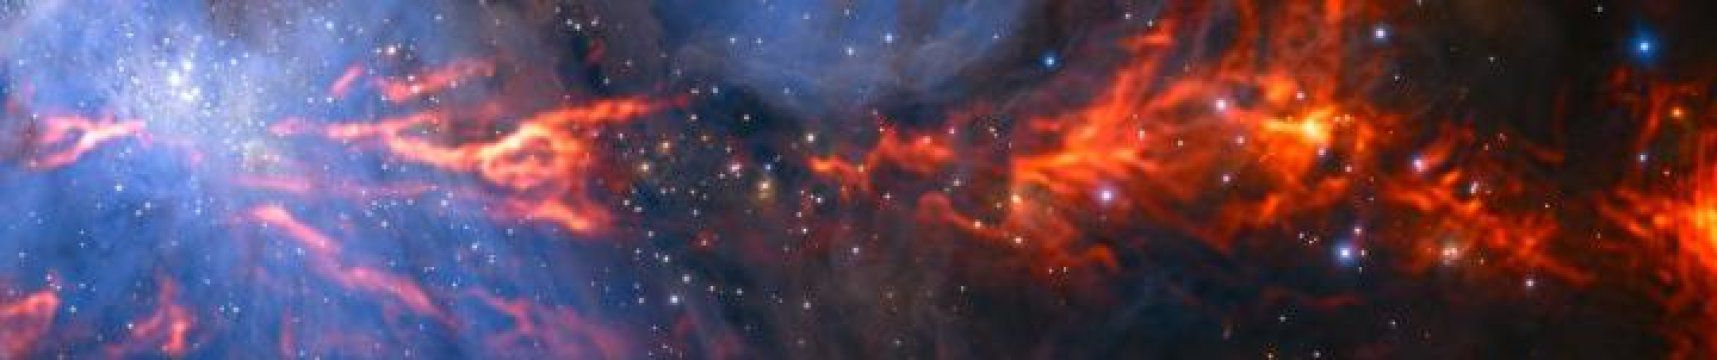 Снимок: Обсерватория ALMA наблюдает сетчатую структуру «звездной колыбели»